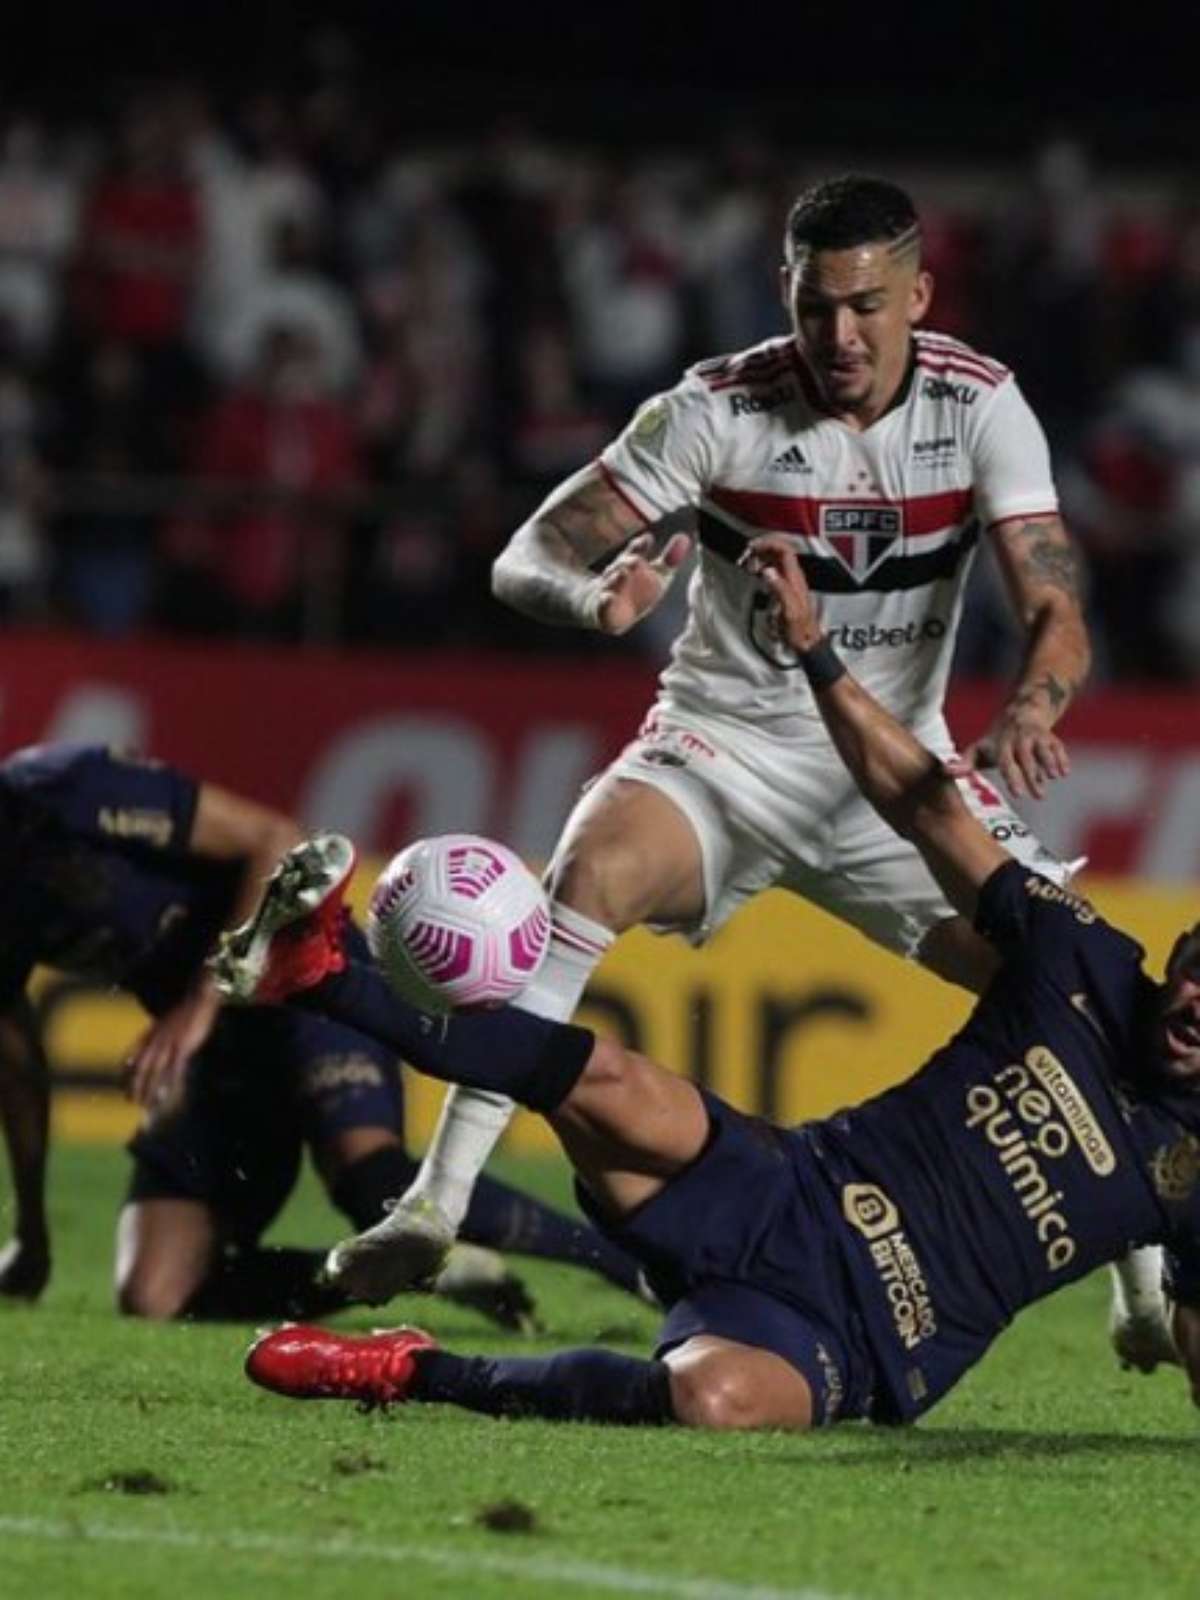 São Paulo x Corinthians: escalação, desfalques e mais do jogo pela semifinal  do Campeonato Paulista 2022